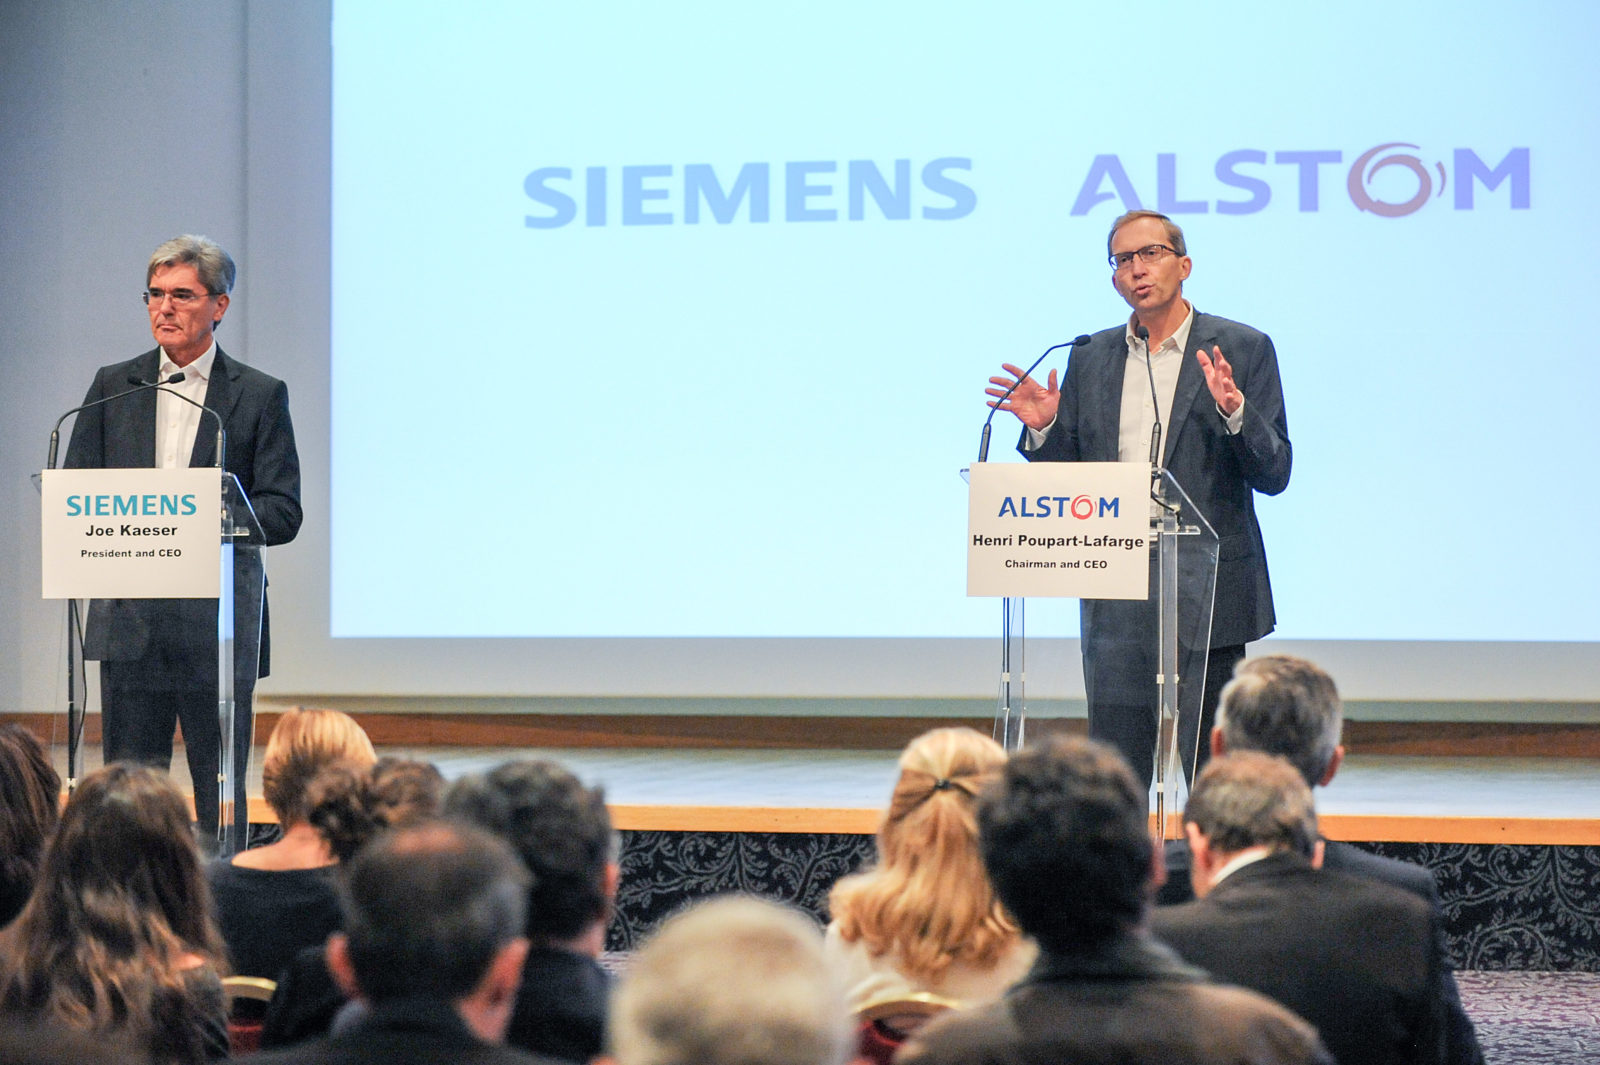 Siemens und Alstom haben eine Absichtserklärung über die Zusammenlegung des Mobilitätsgeschäfts von Siemens, einschließlich der Sparte Bahnantriebe, mit Alstom unterzeichnet. Auf einer gemeinsamen Pressekonferenz haben die Vorstandsvorsitzenden Joe Kaeser, Siemens AG (l.), und Henri Poupart-Lafarge, Alstom (r.), die Schaffung eines europäischen Champions für Mobilitätslösungen verkündet. Mit Siemens und Alstom fusionieren zwei innovative Unternehmen aus der Bahnindustrie und bieten ein umfassendes Angebot an Mobilitätslösungen mit weltweiter Präsenz.  Siemens and Alstom have signed a Memorandum of Understanding to combine Siemens' mobility business, including its rail traction drives business, with Alstom. In a joint press conference the CEOs of the two companies, Joe Kaeser, Siemens AG (l.), and Henri Poupart-Lafarge from Alstom (r.), announced the creation of a European Champion in Mobility. With Siemens and Alstom two innovative players of the railway market join forces with comprehensive offering and a global presence.